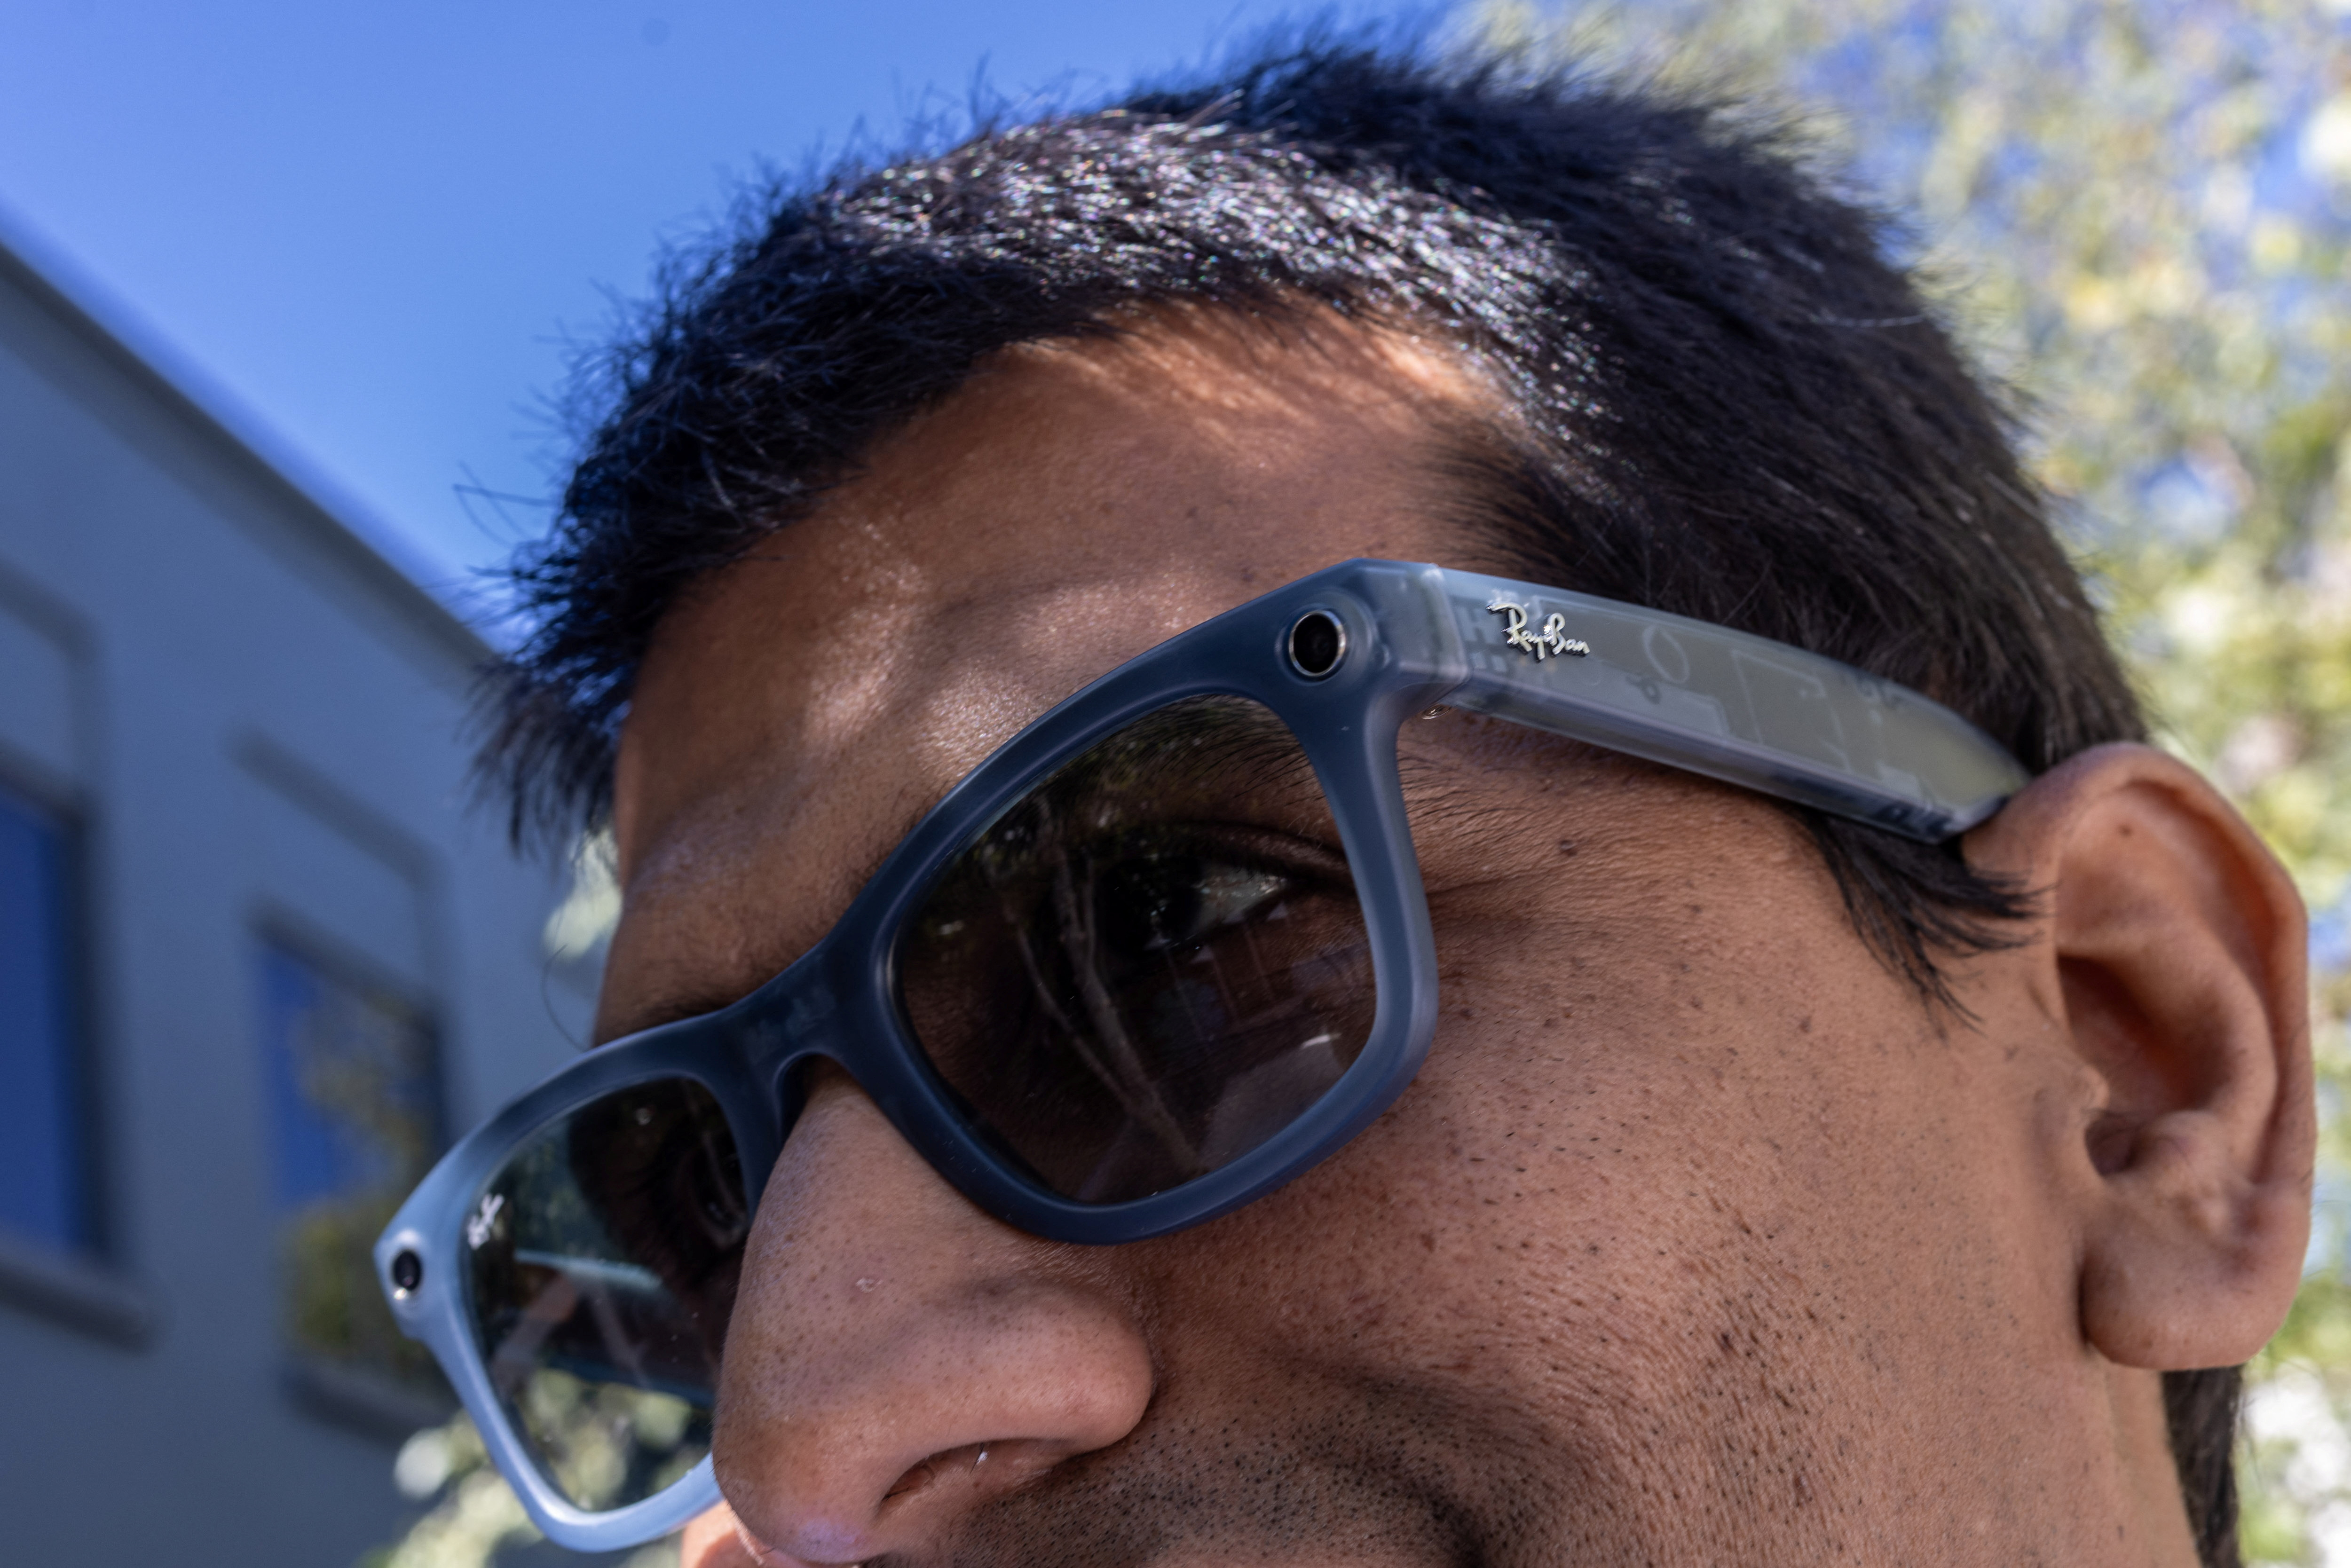 TCL presenta las gafas RayNeo X2 de realidad aumentada en el CES 2023